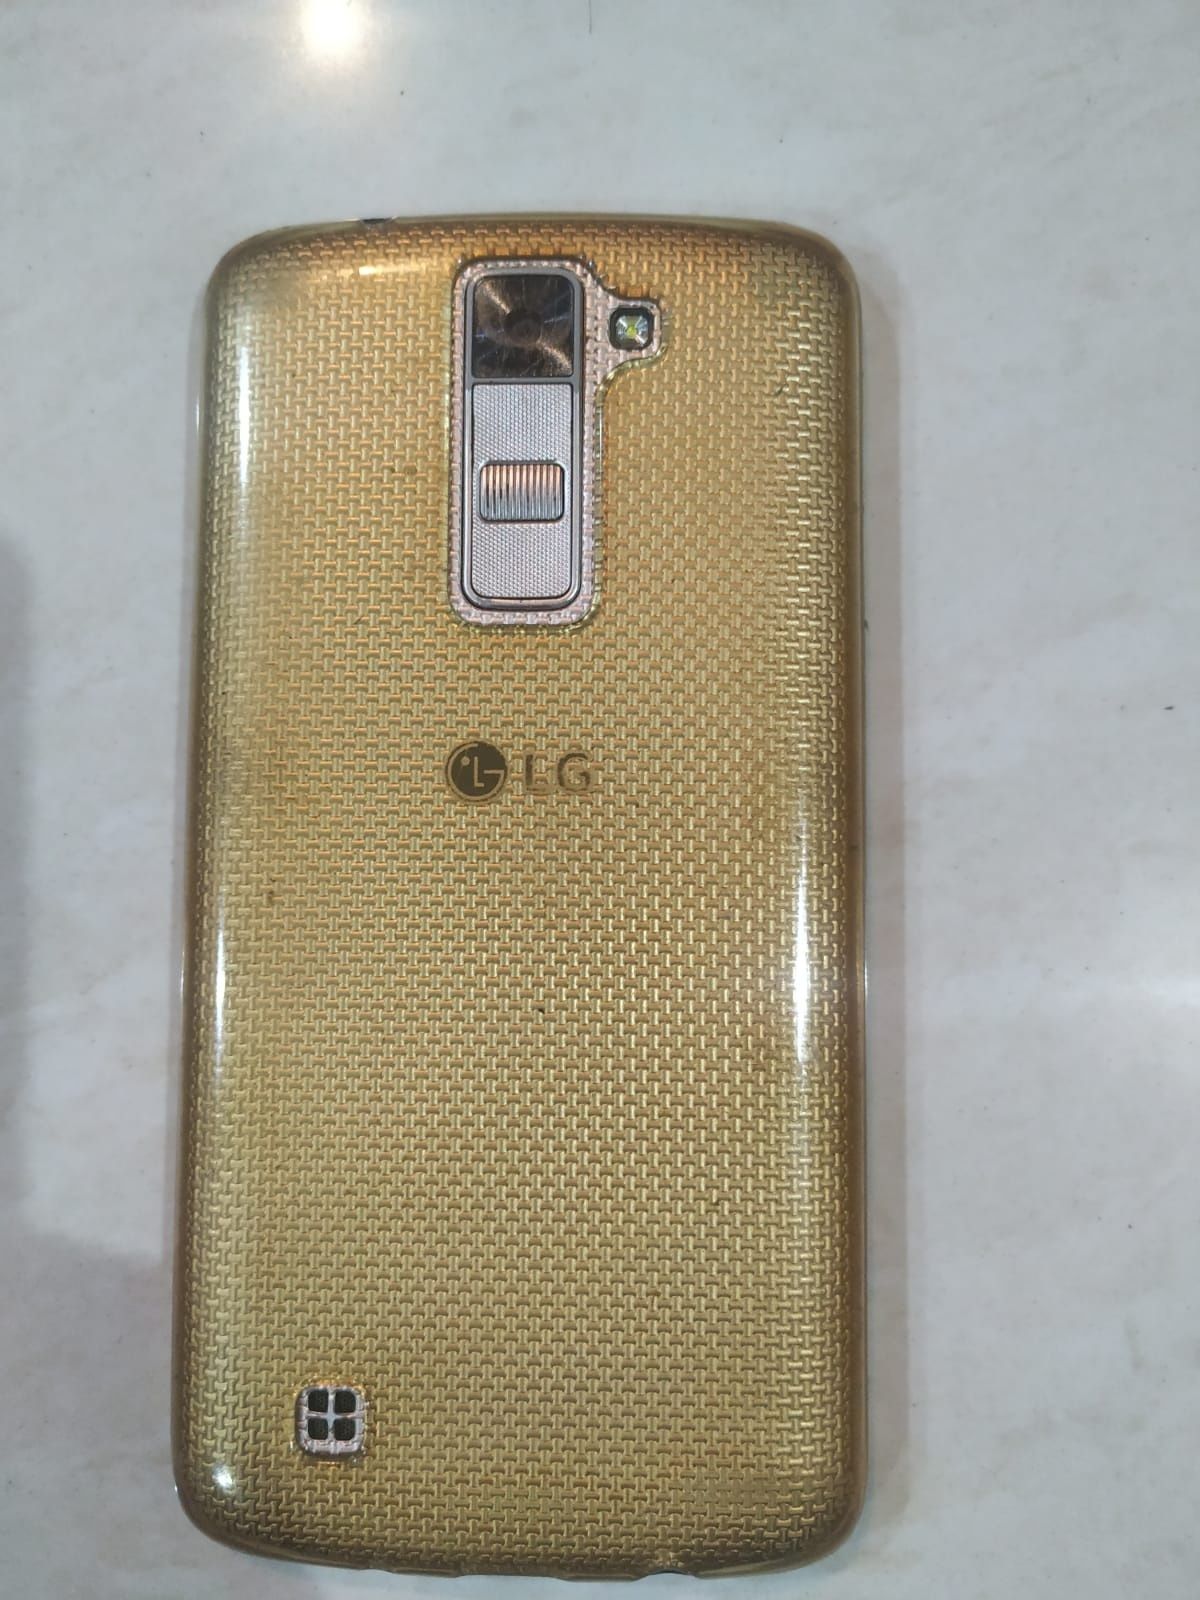 LG K8 16 GB в хорошем состоянии